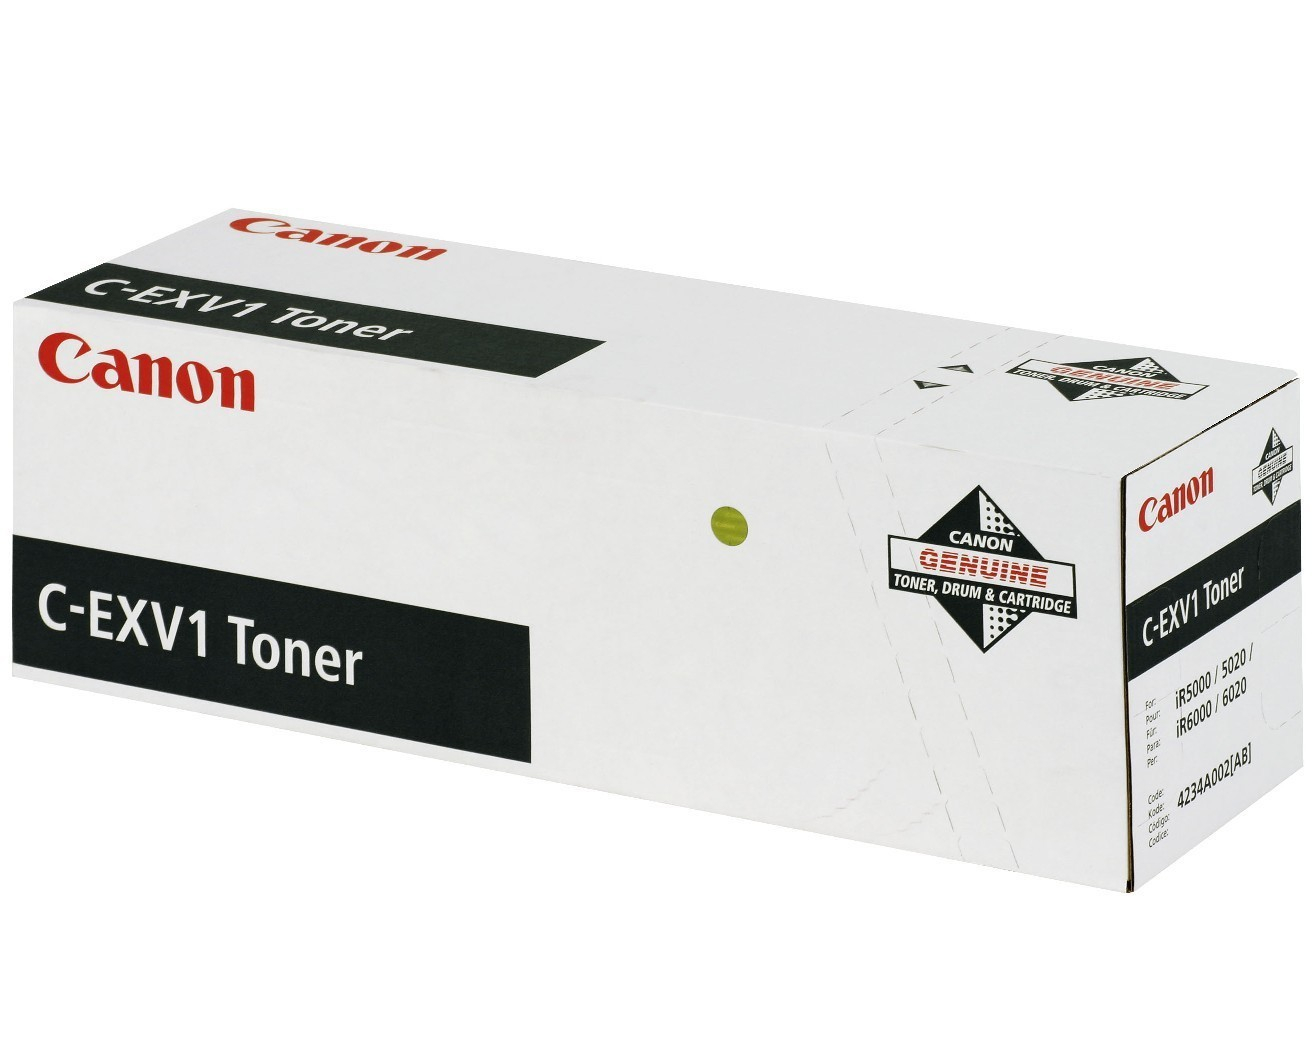 Original Toner Canon IR 5000 i (4234A002 / C-EXV1) Schwarz